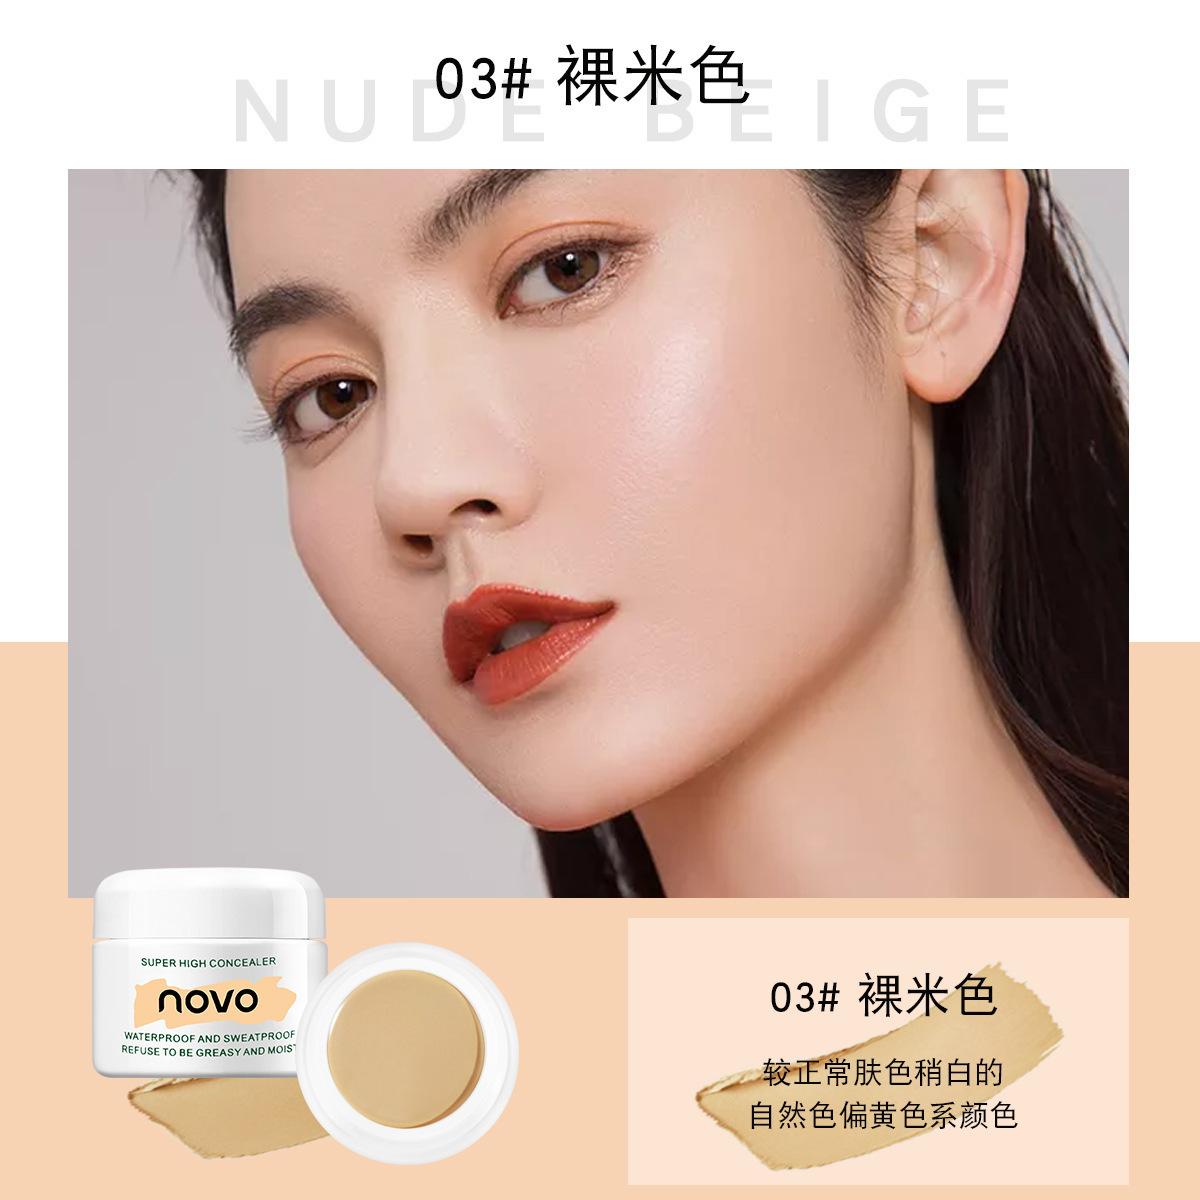 Makeup Novo HD Clear Concealer Strong Cover Fleck Facial Acne Marks Acne Dark Circles Foundation Cream